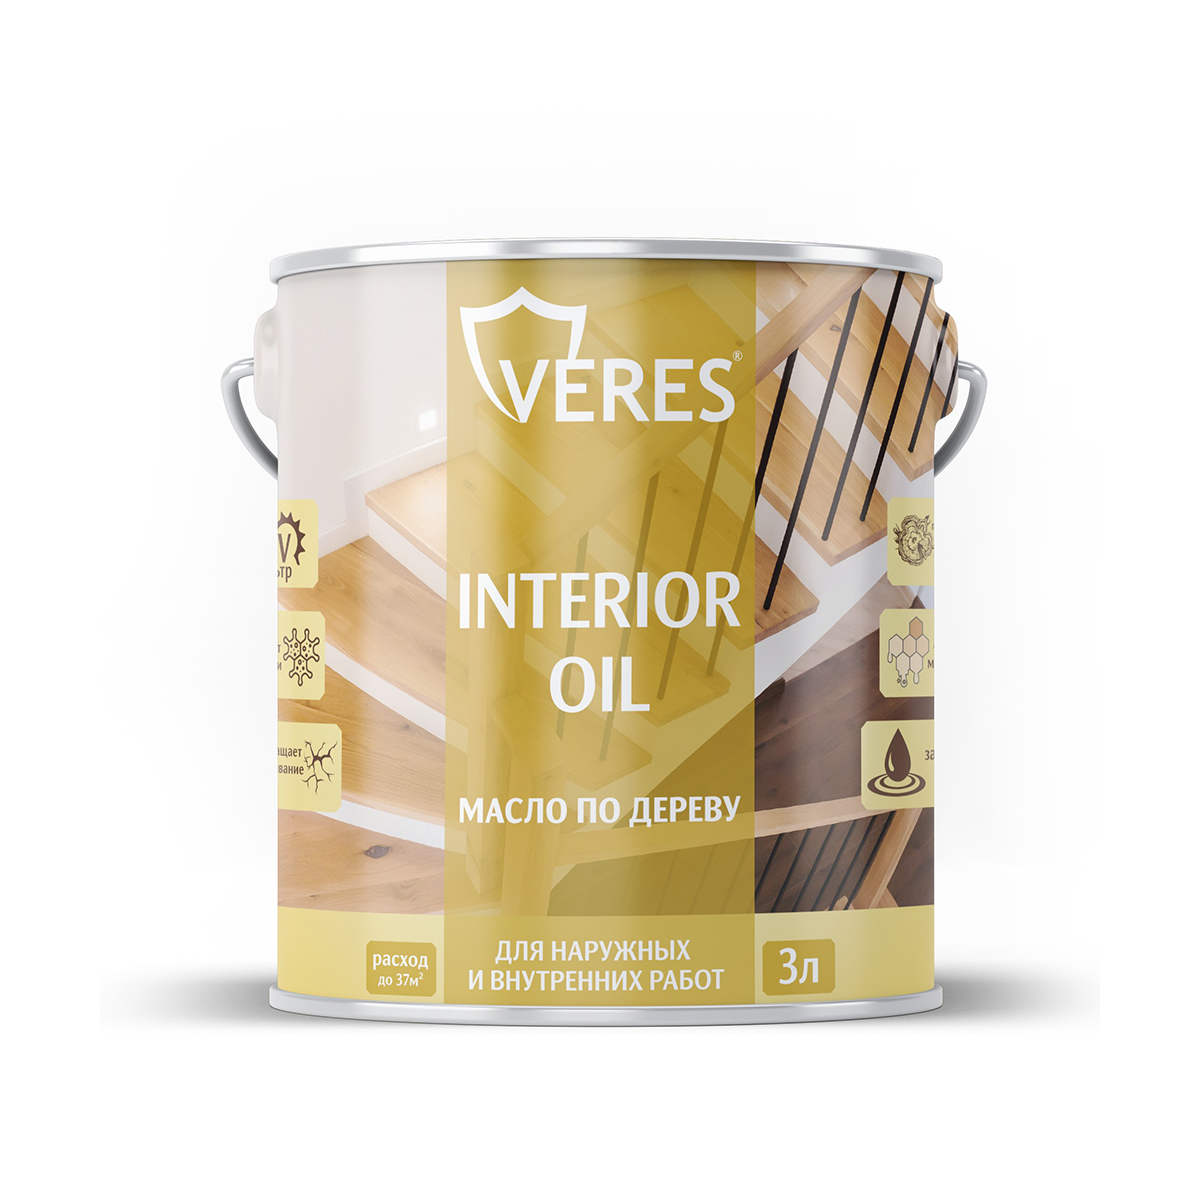 Масло для дерева Veres Interior Oil, 3 л, сосна масло детское для тела после купания 115мл